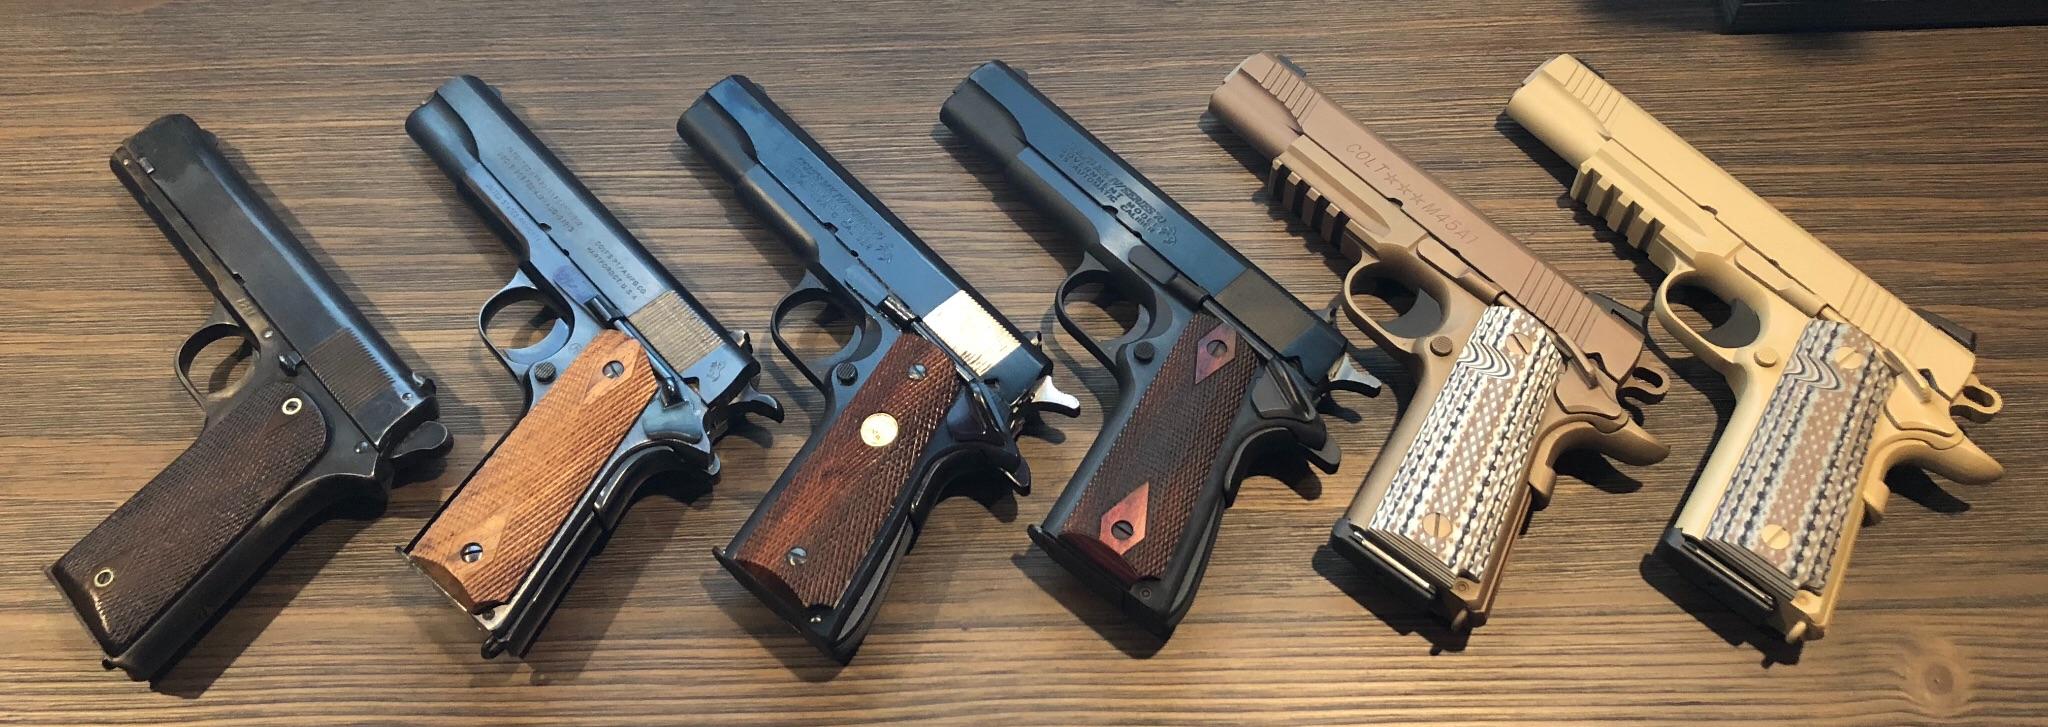 45 acp pistols